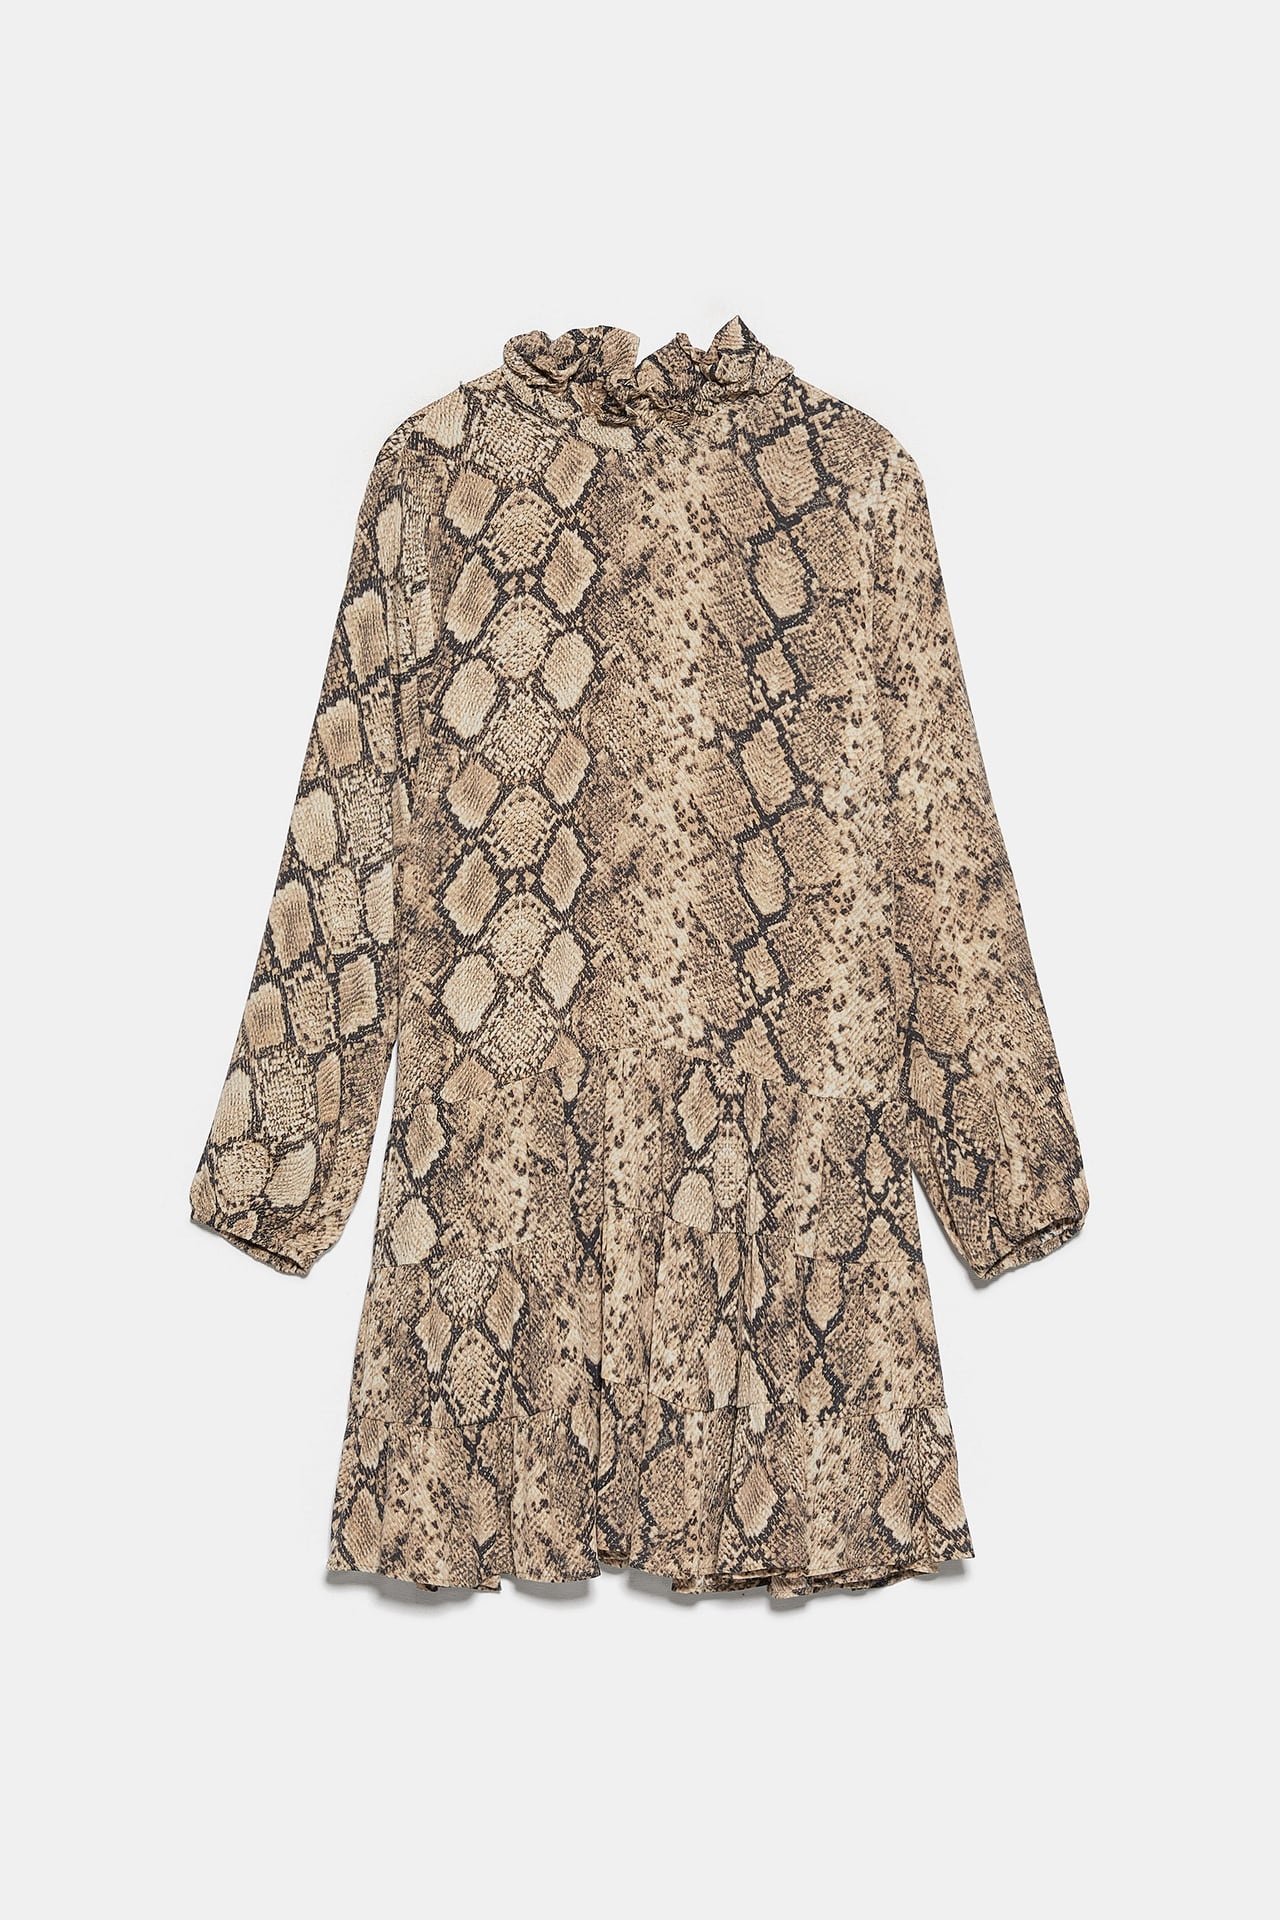 Zara: ¿Serpiente cebra? Estos son los vestidos el print de este otoño | Moda